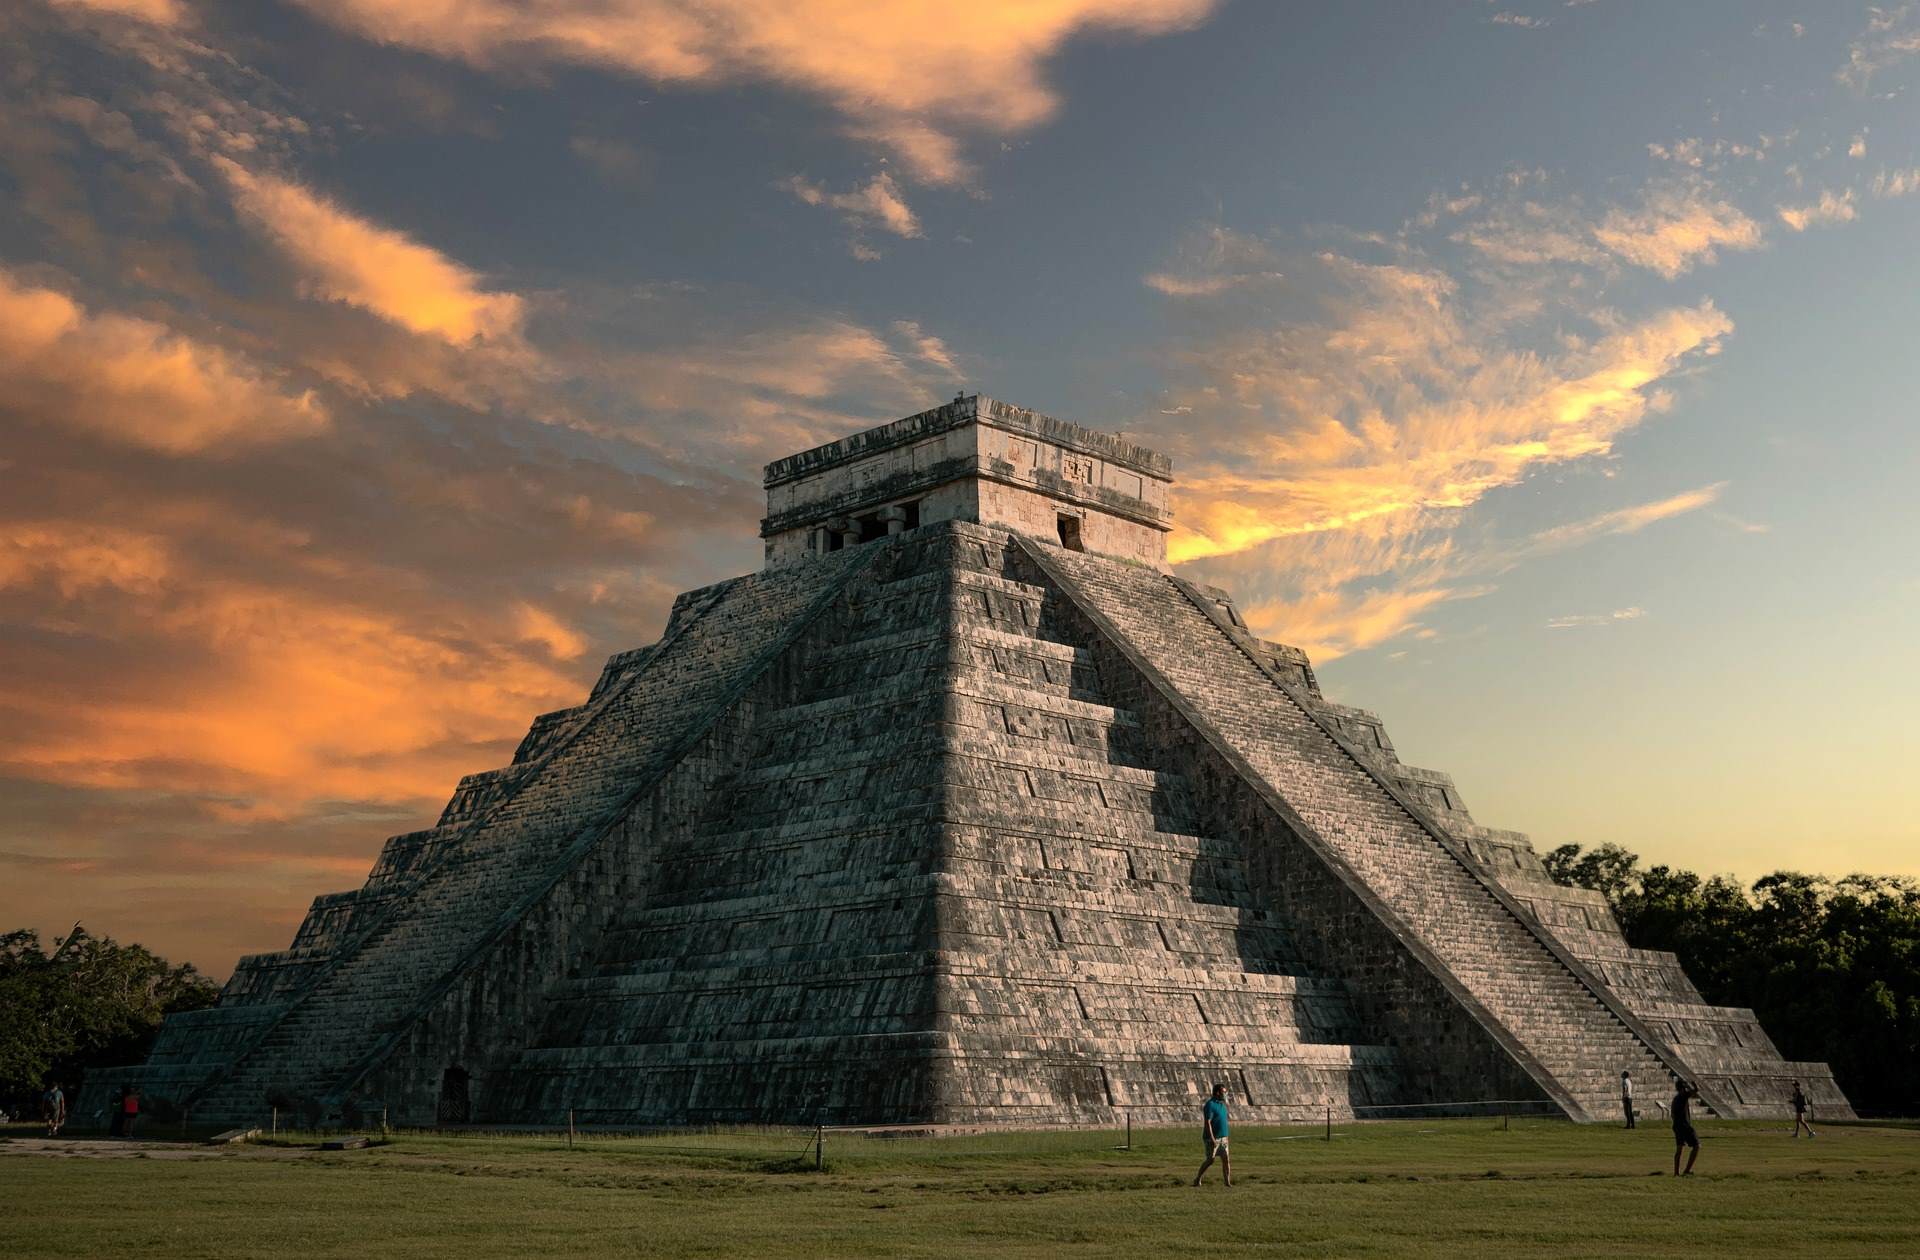  El Castillo de Chichén Itzá, la maravilla del mundo